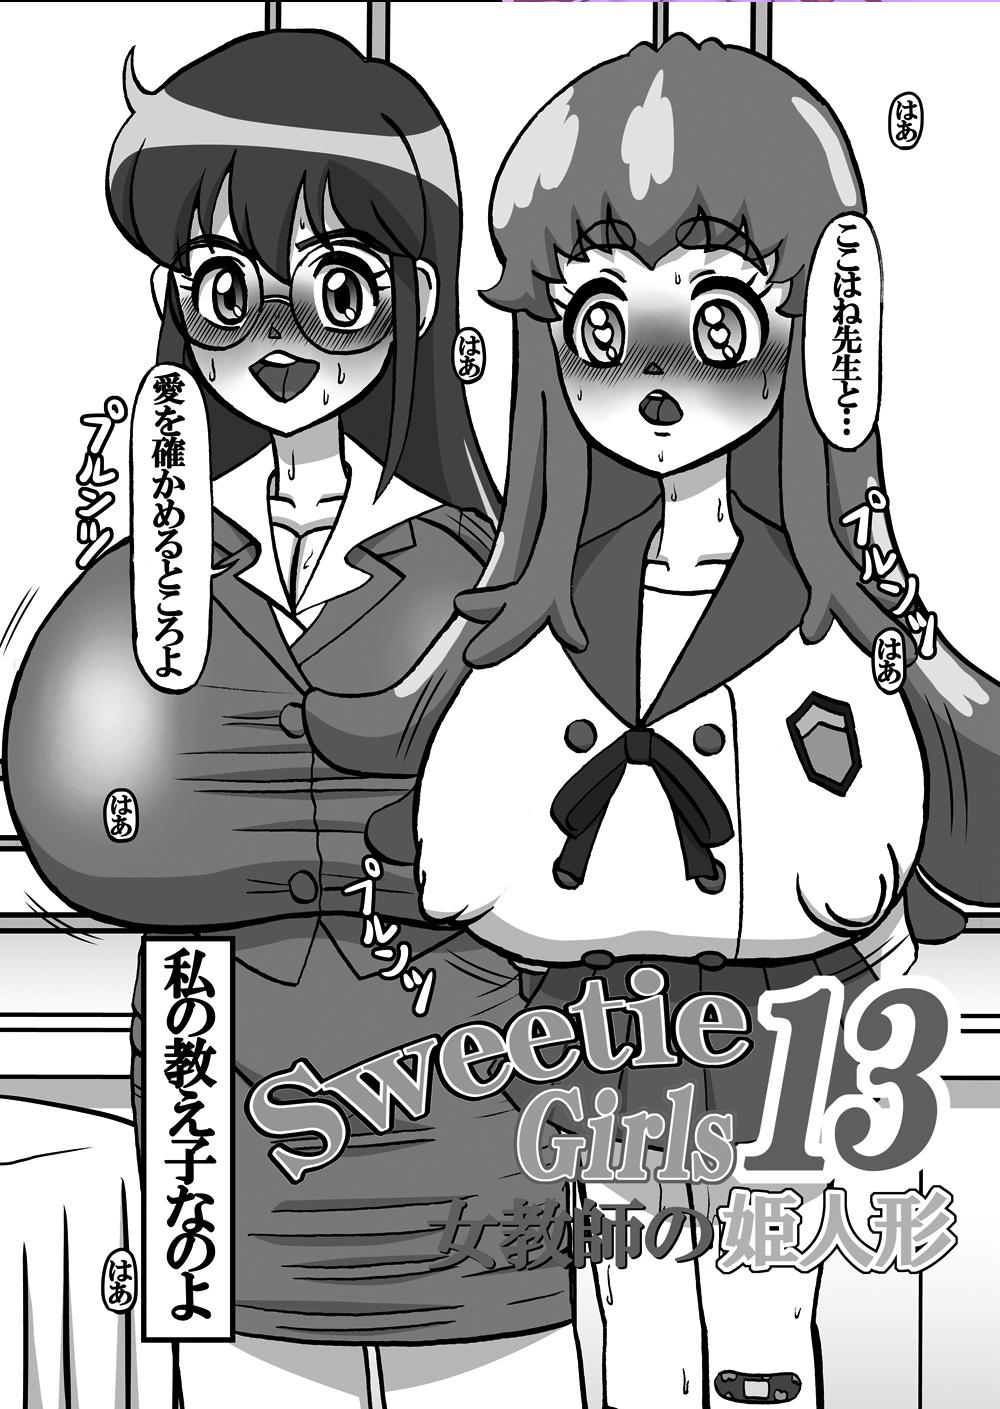 Sweetie Girls 13 4